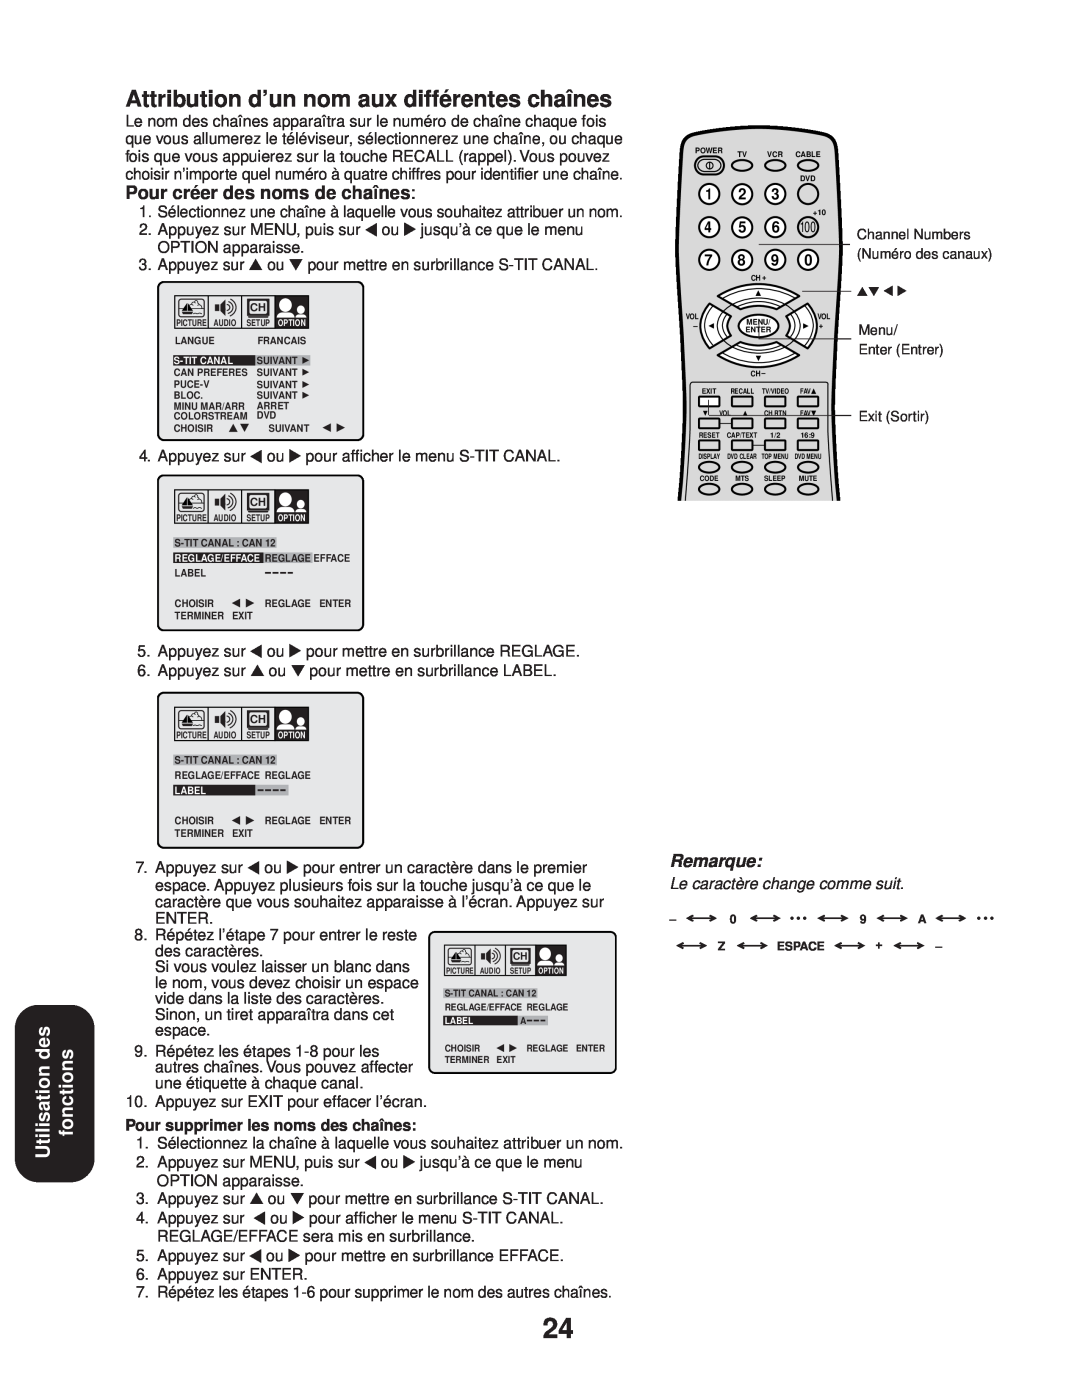 Toshiba 24AF43 Attribution d’un nom aux différentes chaînes, Utilisation des fonctions, Pour créer des noms de chaînes 